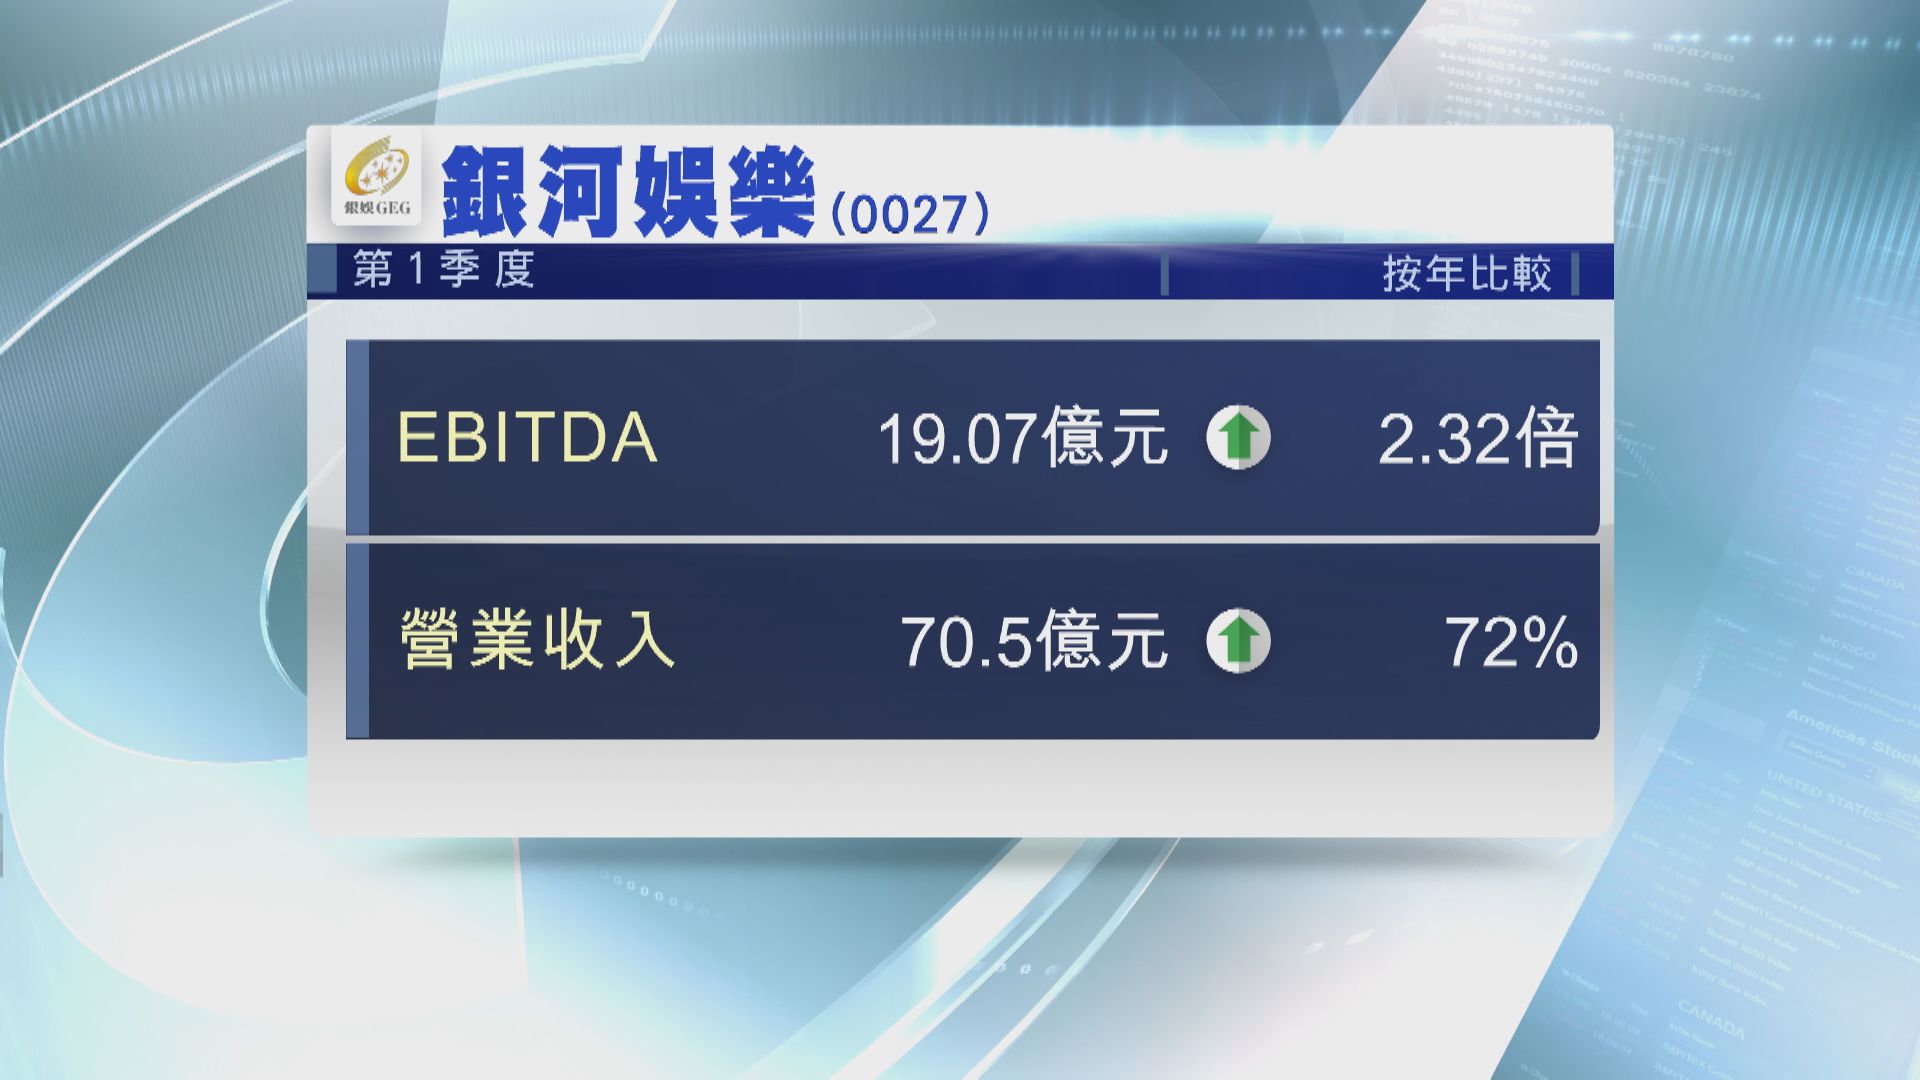 【季度業績】銀娛上季經調整EBITDA升逾兩倍